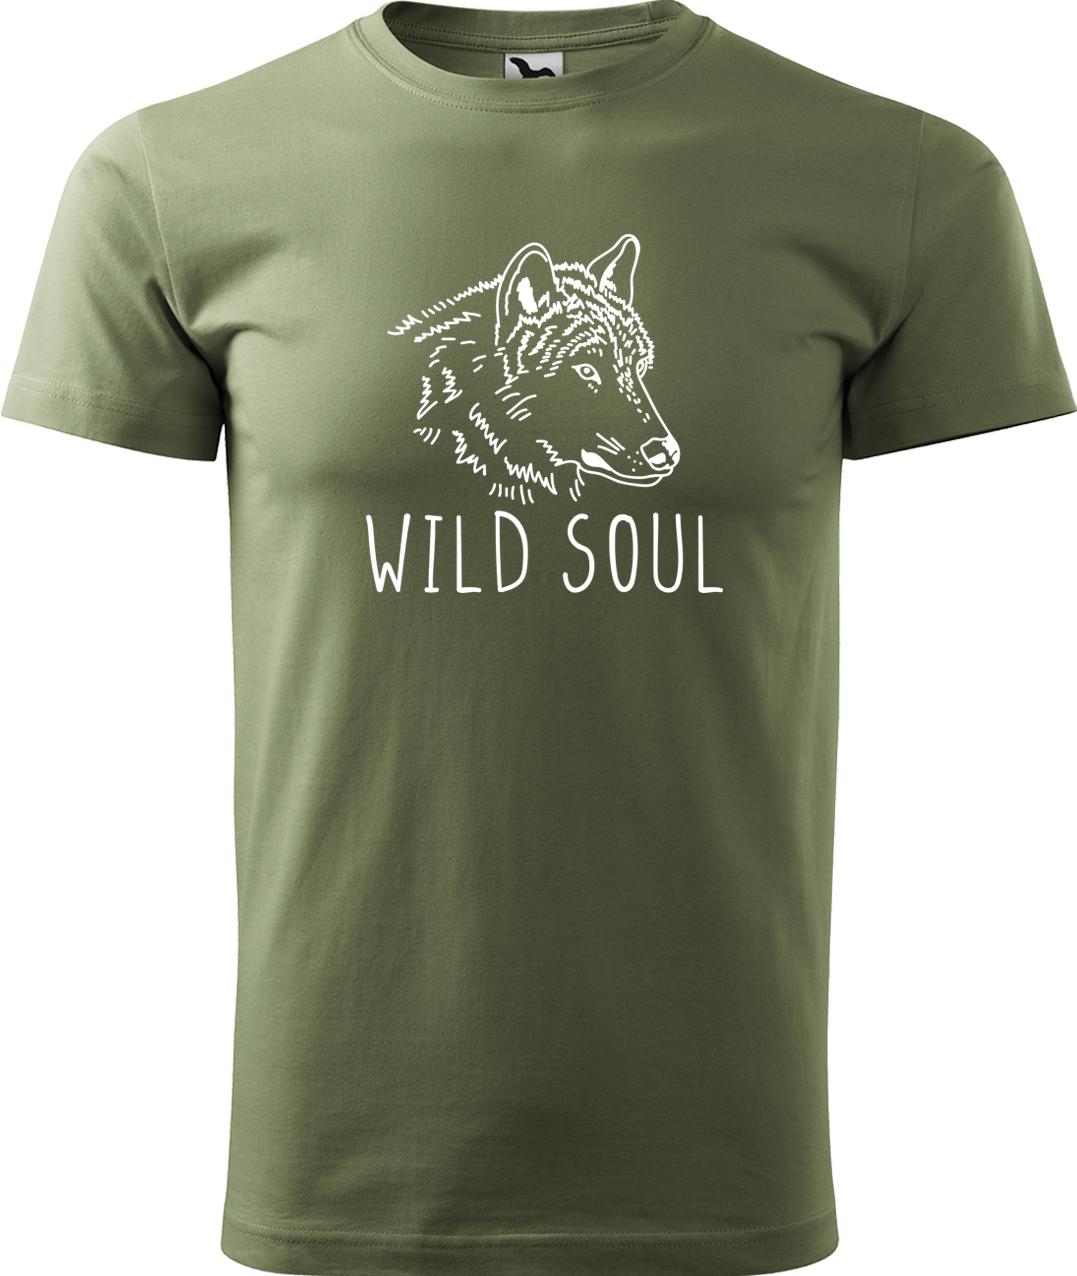 Pánské tričko s vlkem - Wild soul Velikost: XL, Barva: Světlá khaki (28), Střih: pánský